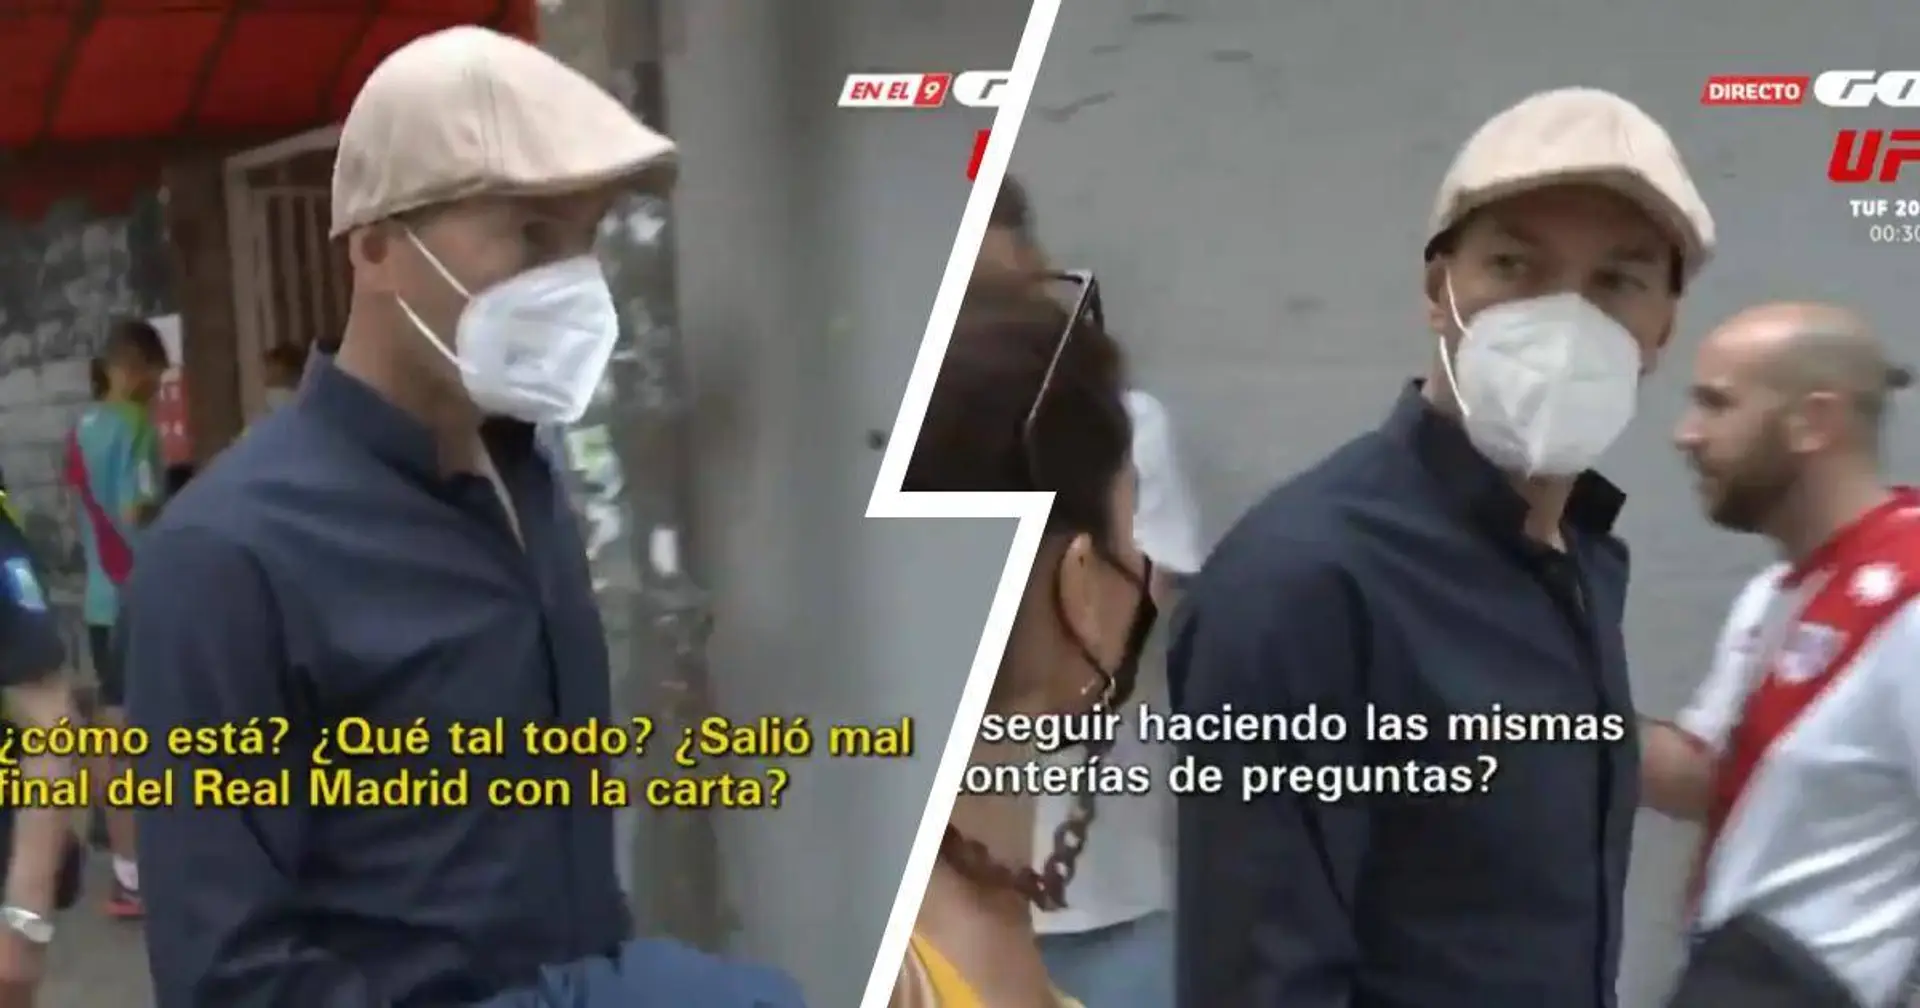 Zidane attacca un giornalista: "Il tuo lavoro è una vergogna! Vieni a parlare senza le telecamere" 